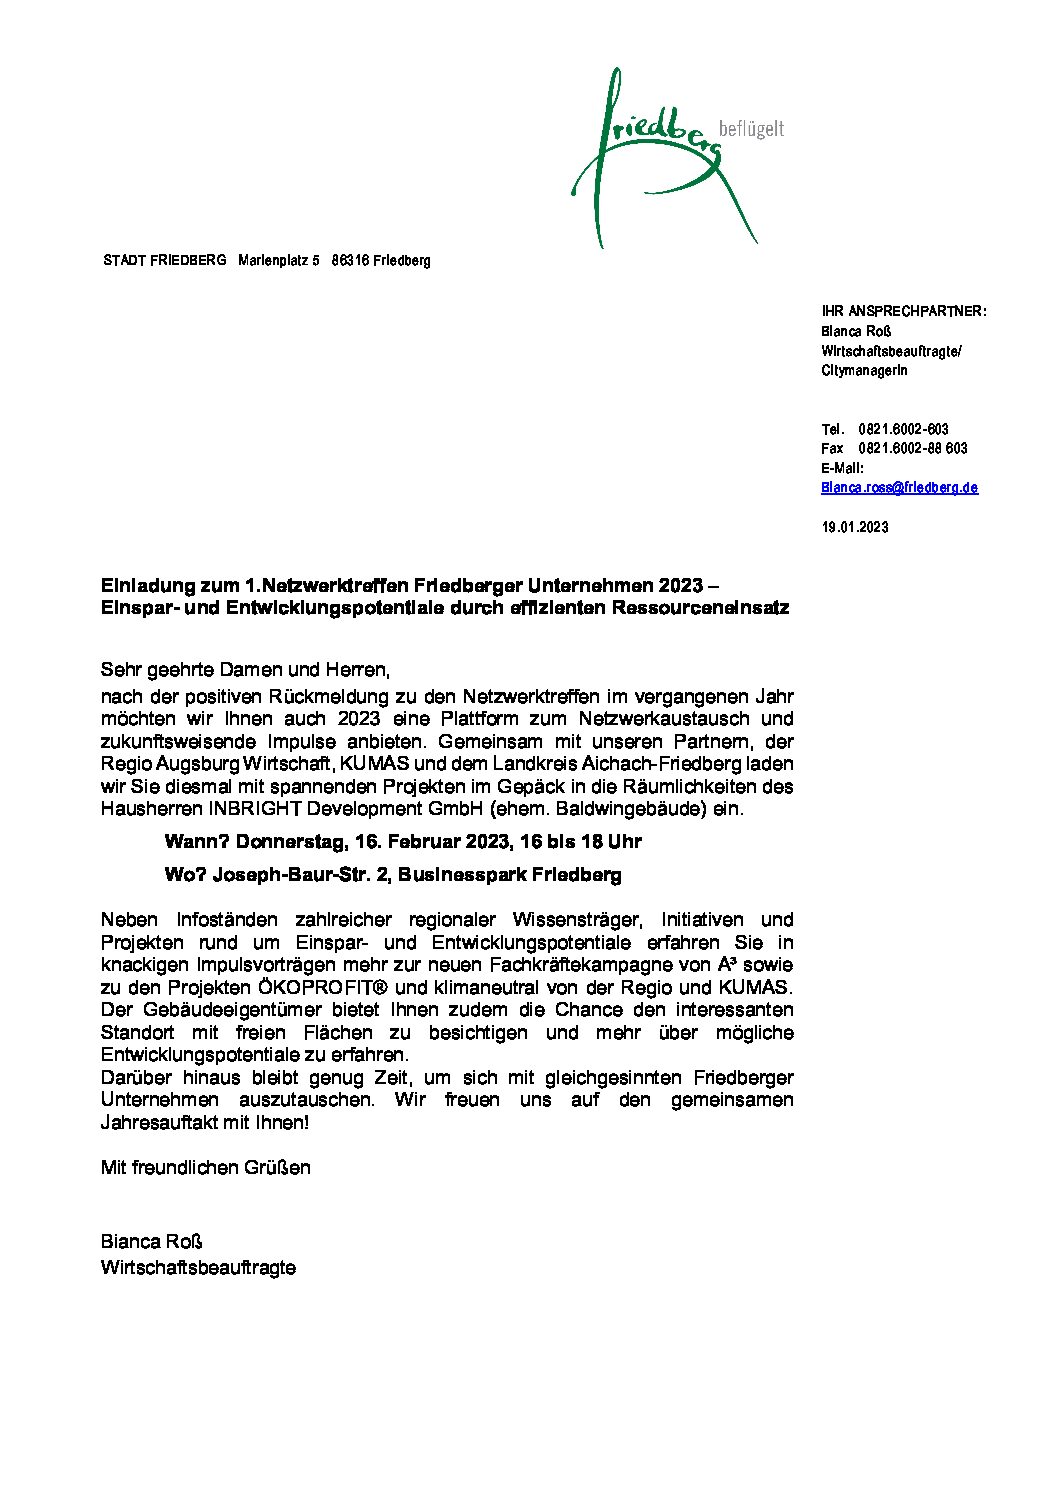 Einladung zum 1.Netzwerktreffen Unternehmen 2023_Wifö Stadt Friedberg